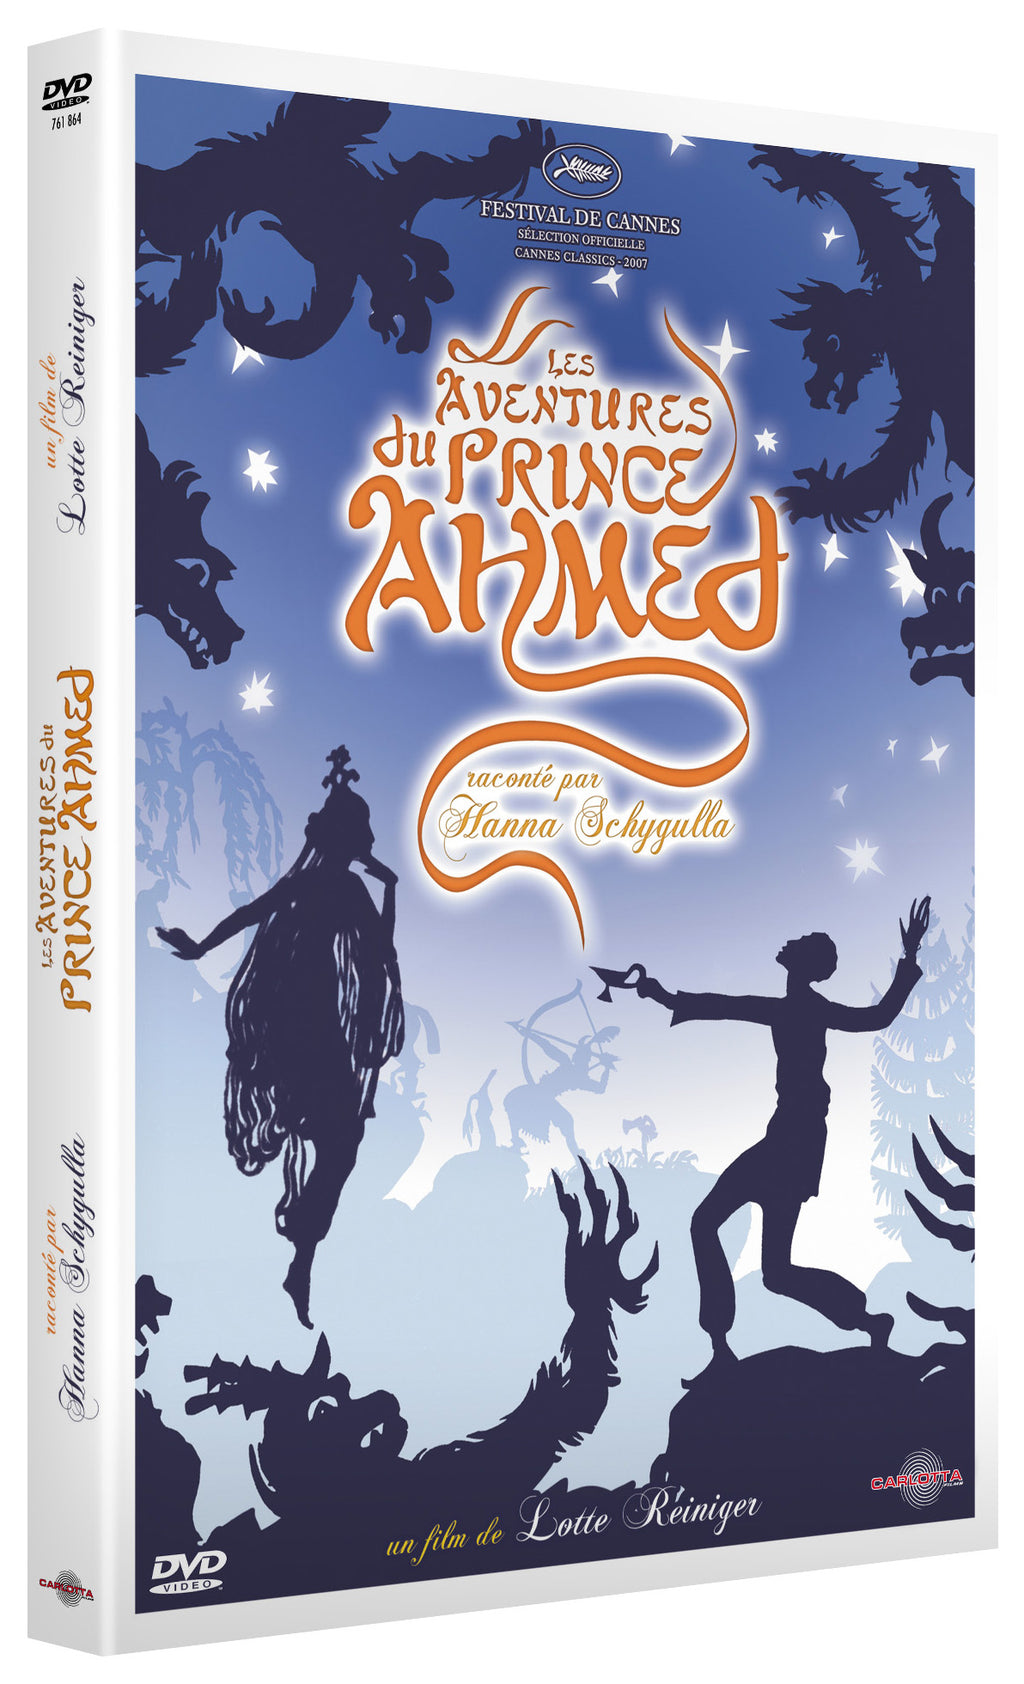 Les Aventures du prince Ahmed de Lotte Reiniger - DVD - Carlotta Films - La Boutique